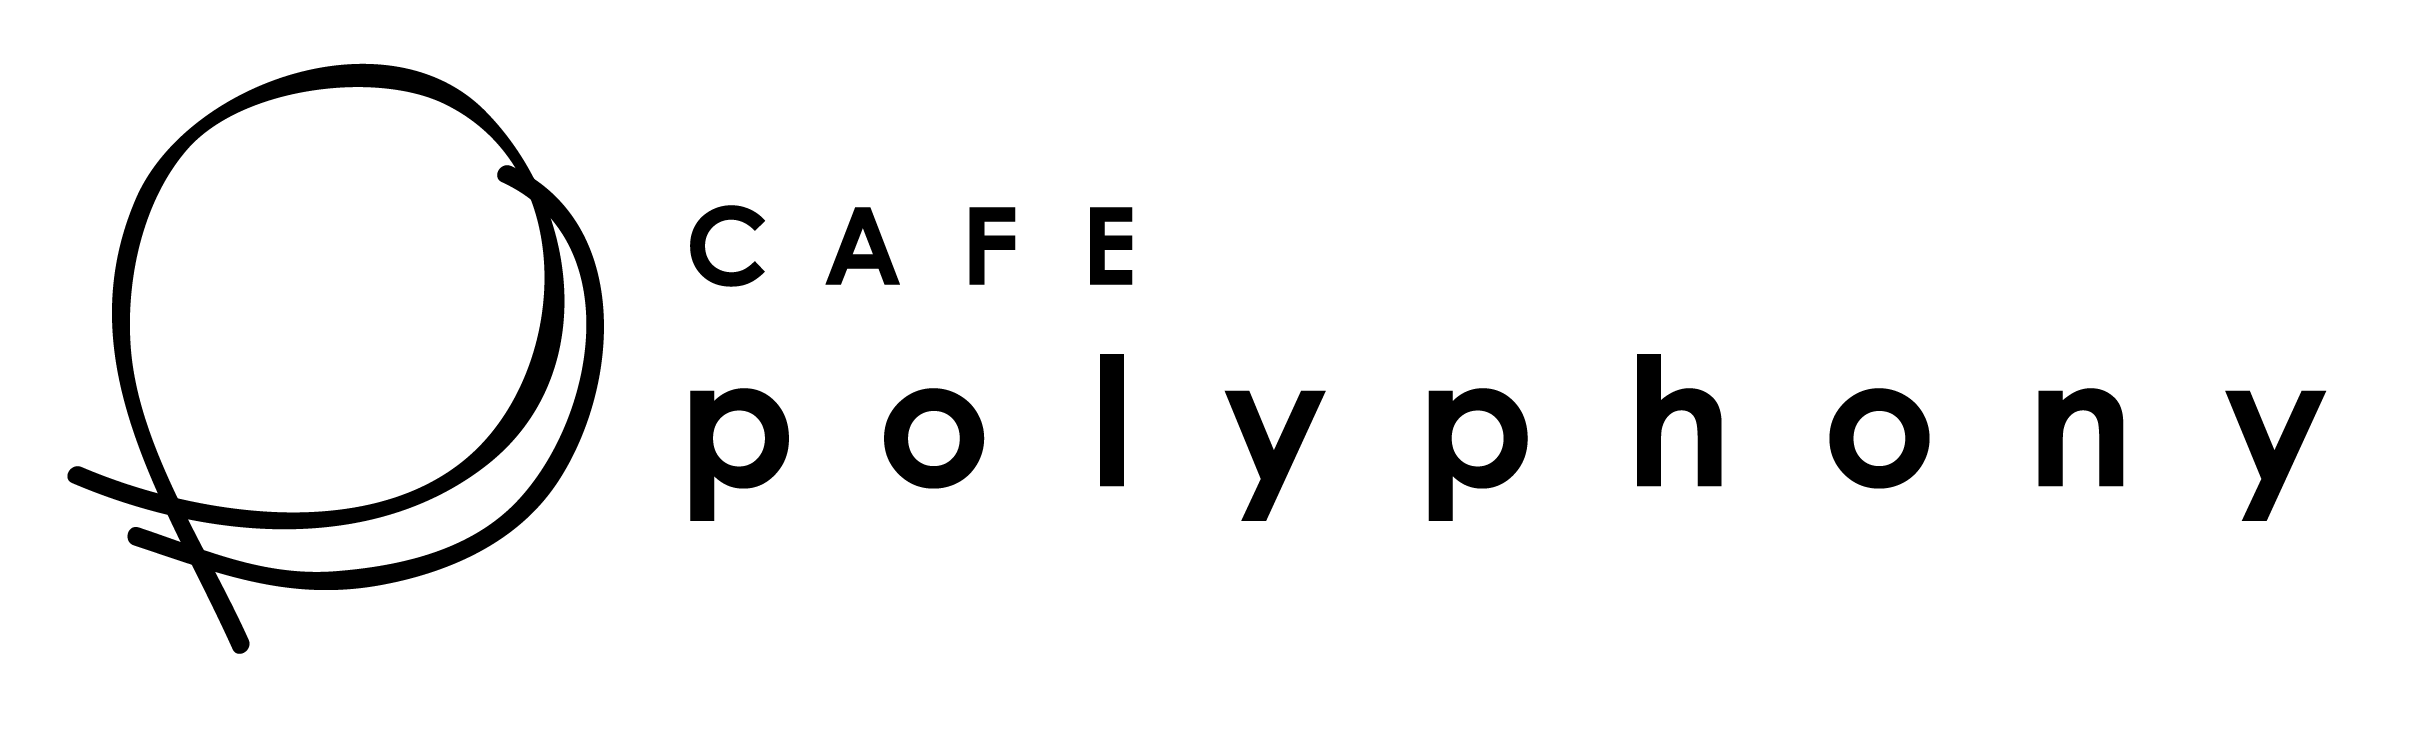 Cafe Polyphony